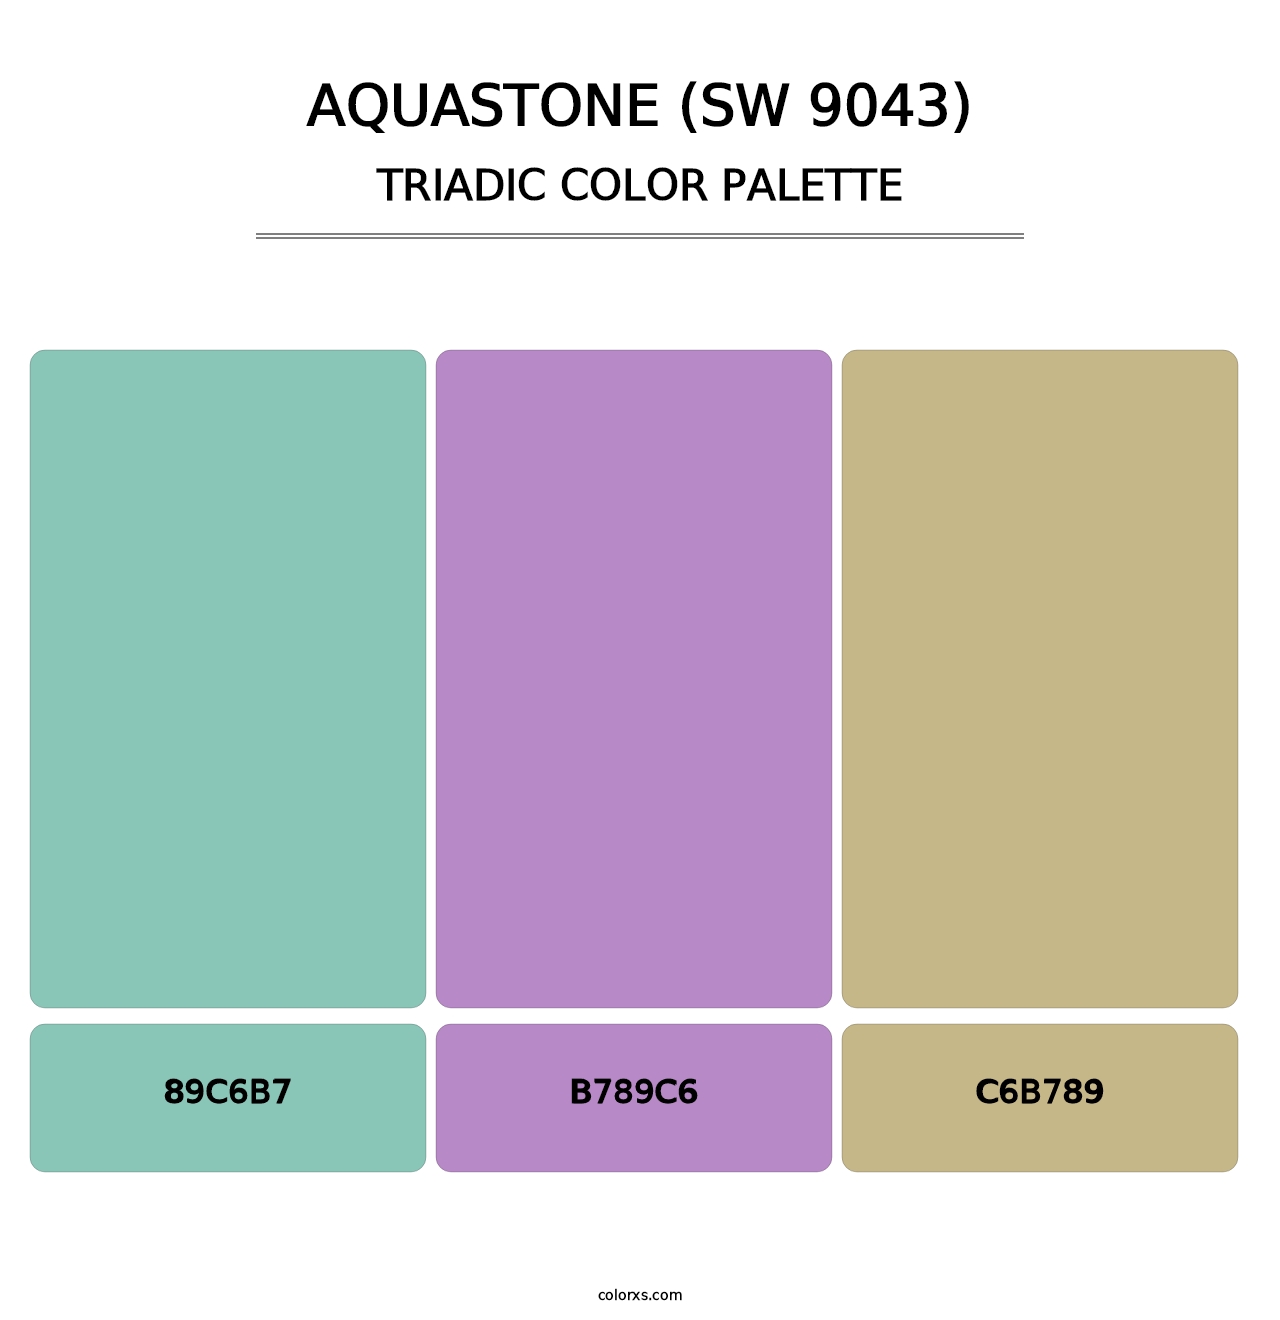 Aquastone (SW 9043) - Triadic Color Palette